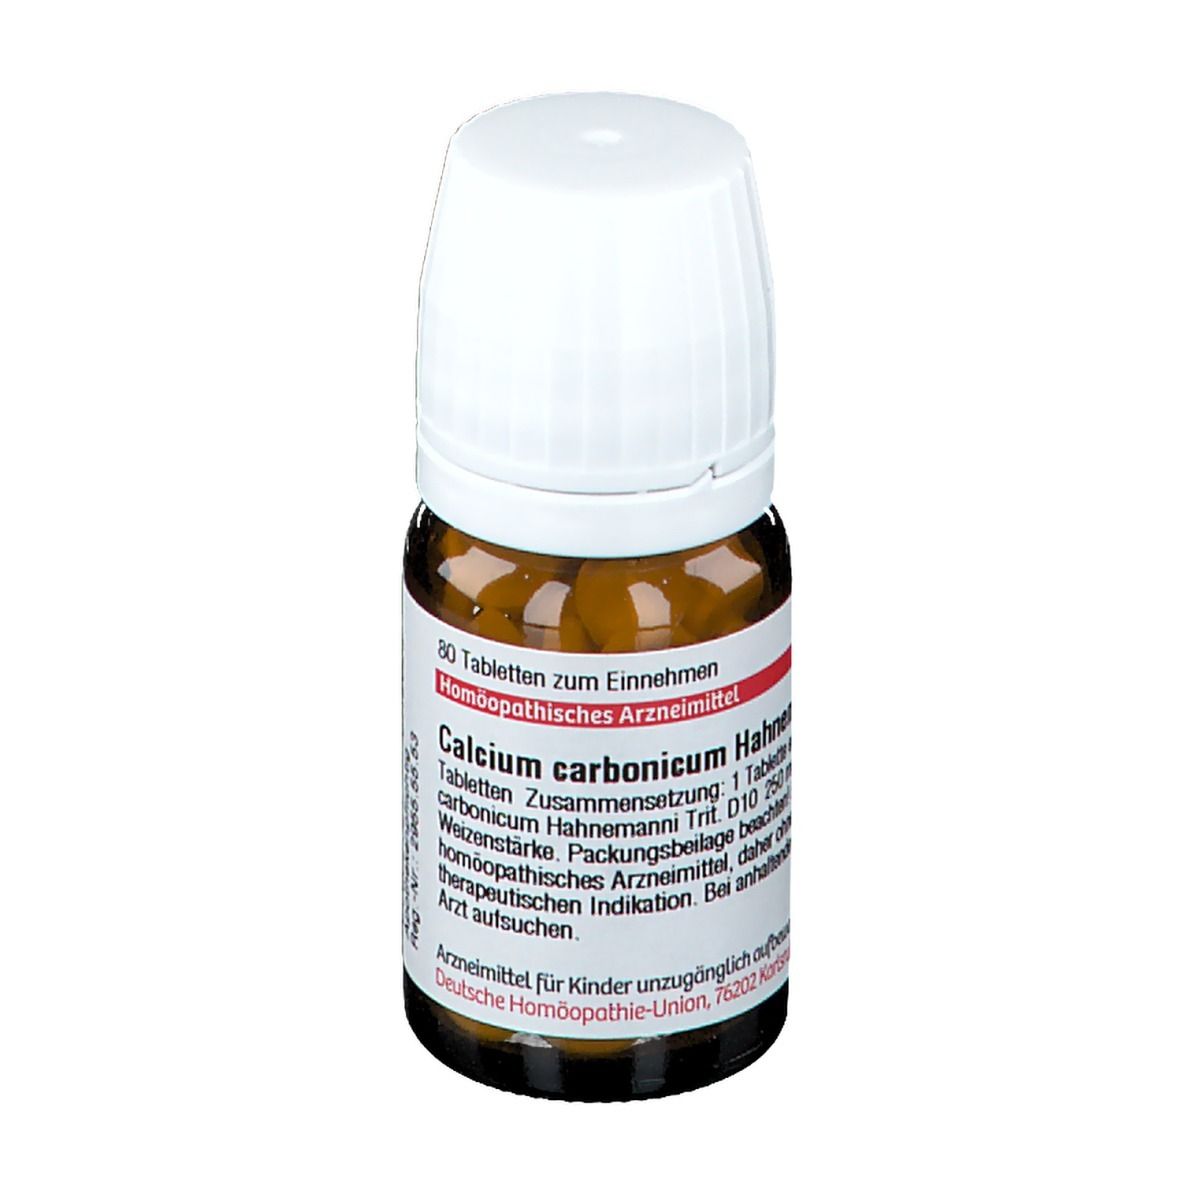 DHU Calcium Carbonicum Hahnemanni D10